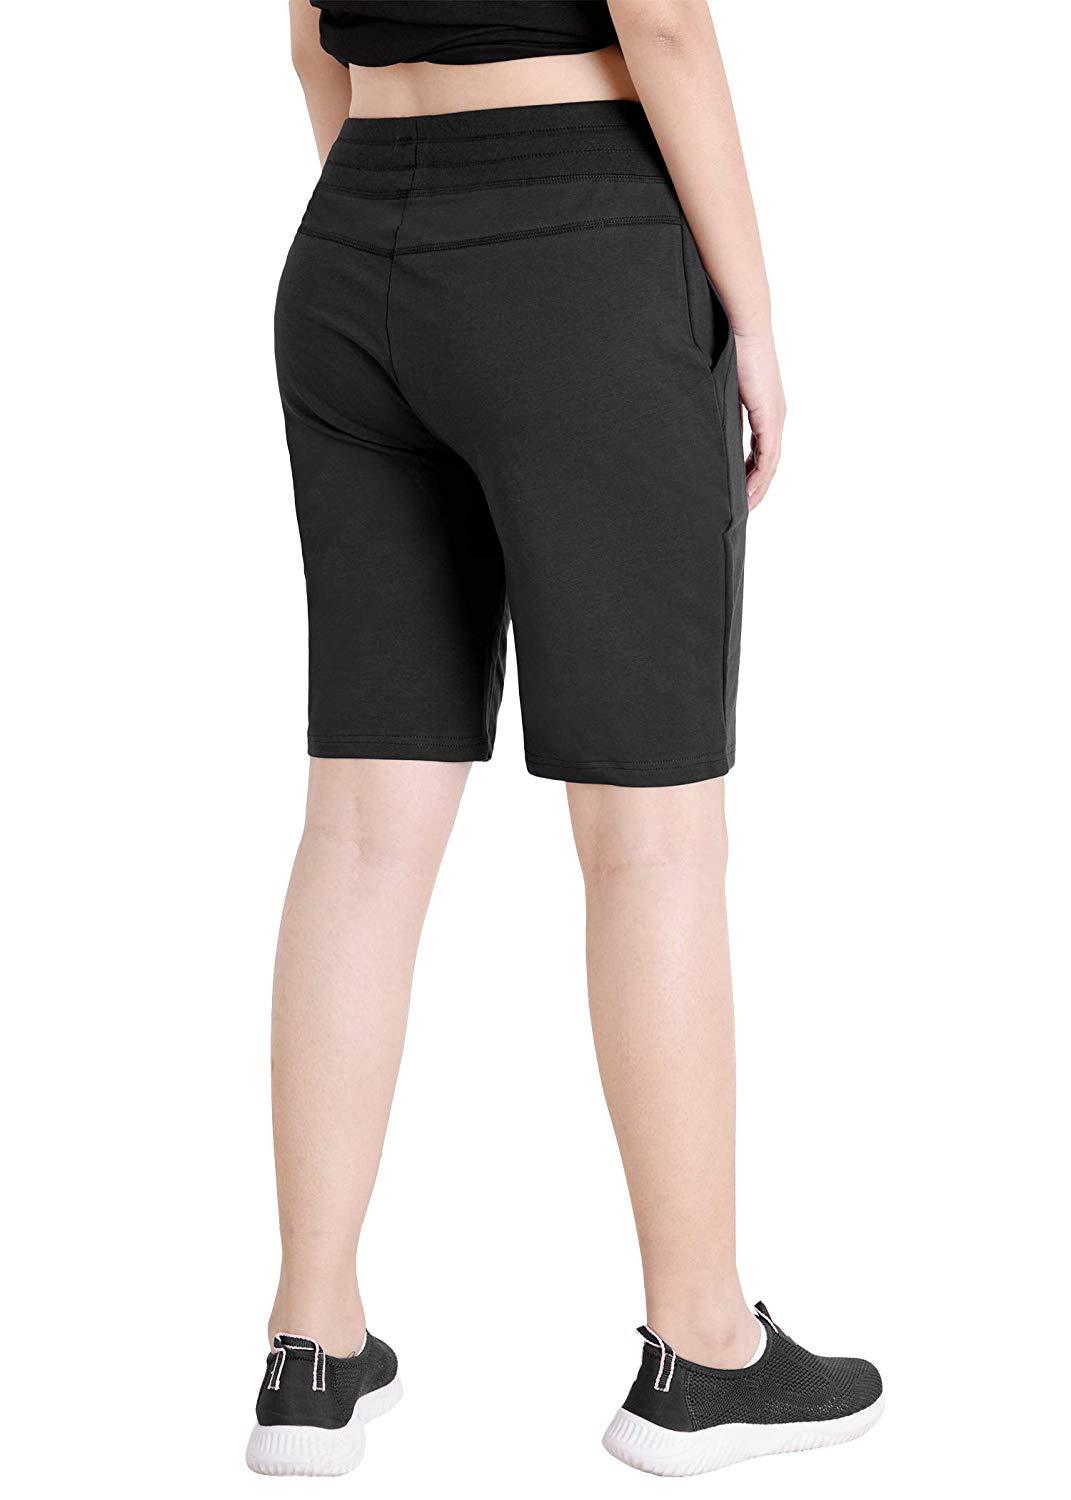 Women's Cotton Jersey Bermuda Shorts with Pockets - Latuza